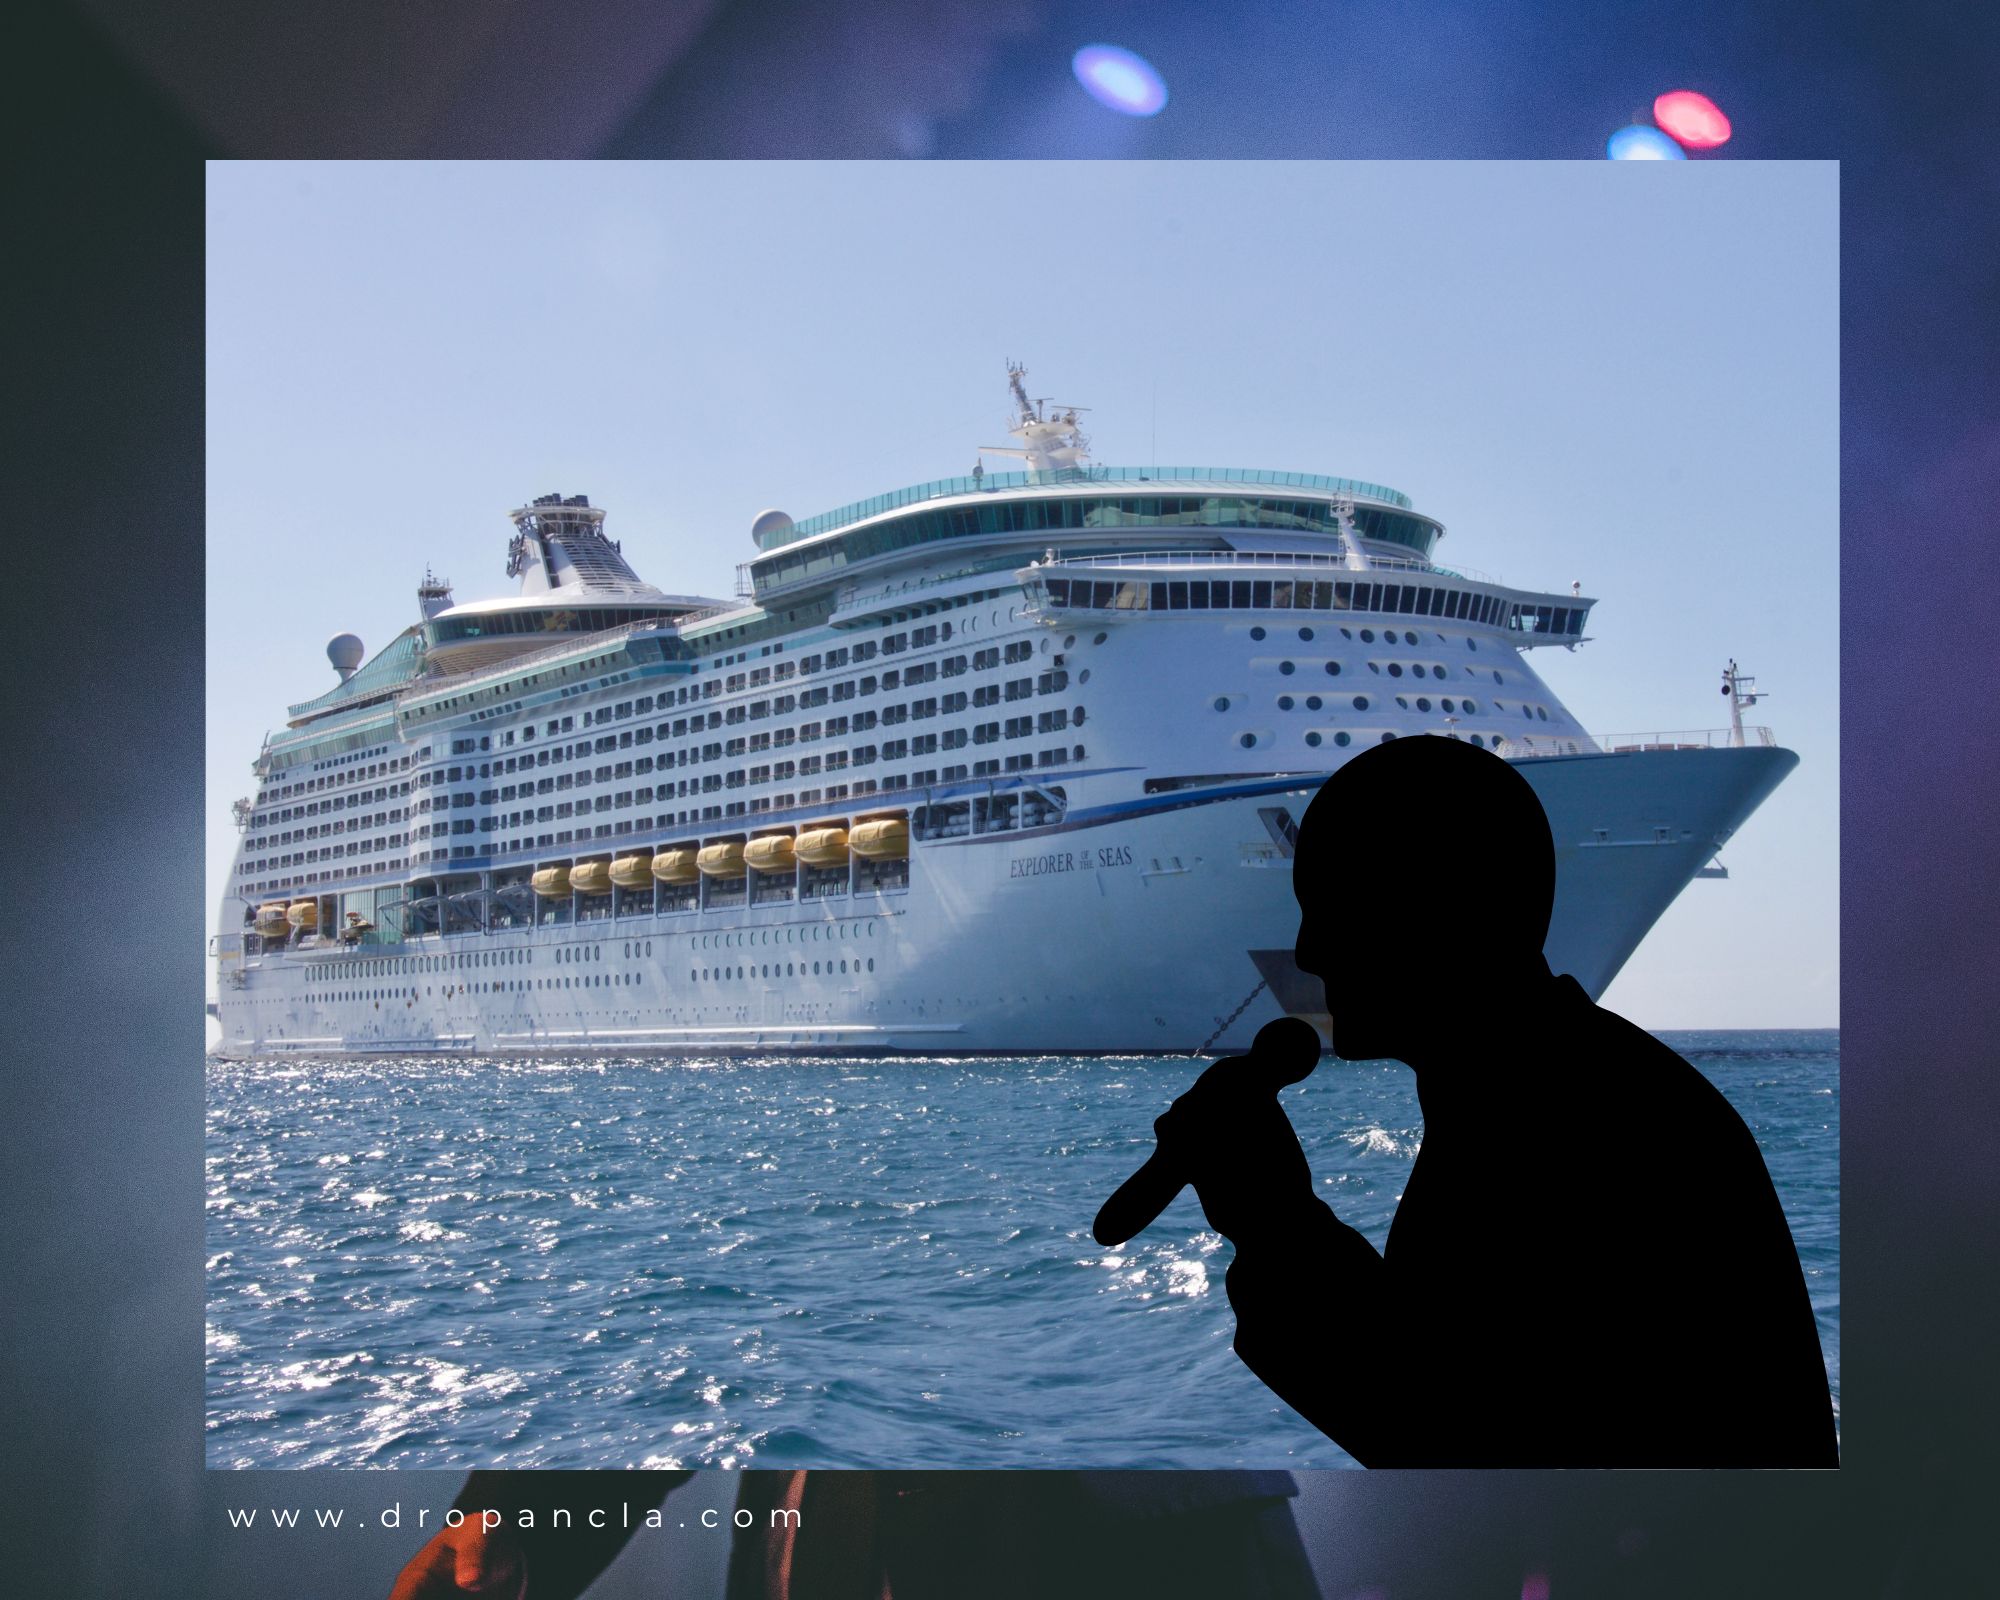 Cruise ship singer